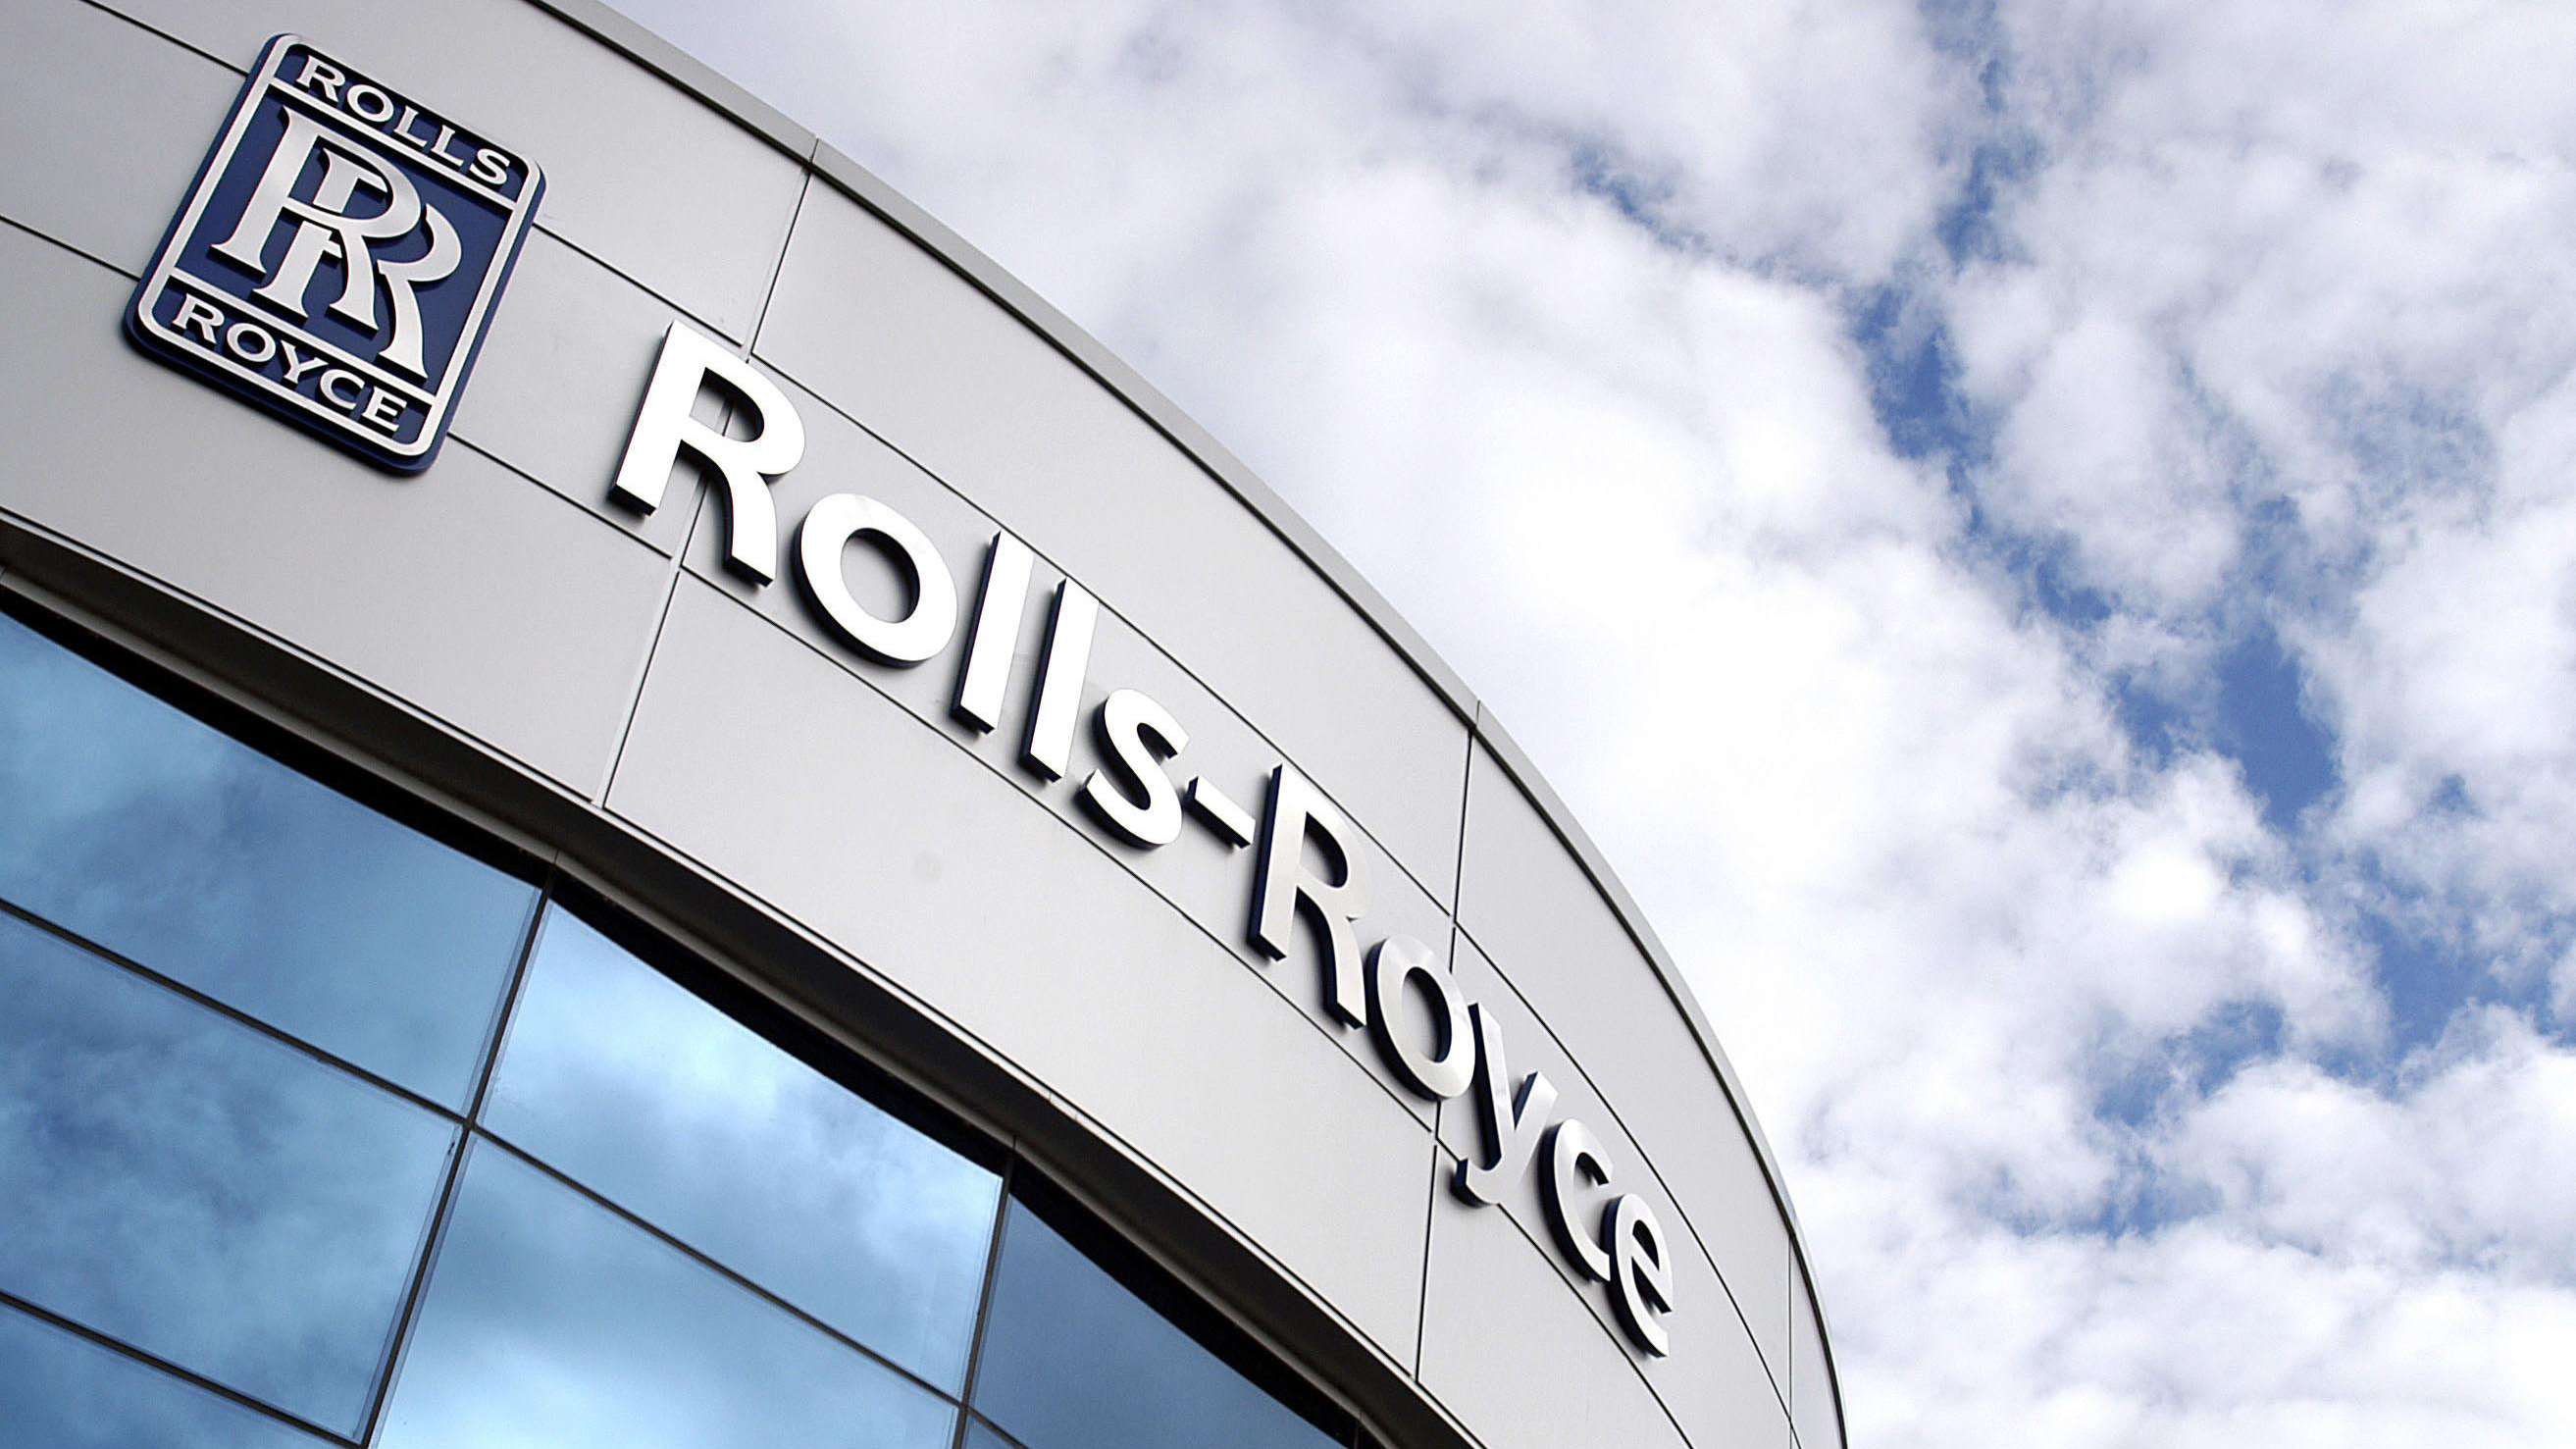 Rolls-Royce-gyar-hajomotorgyar-tozsde-jo-ev-hajozashu